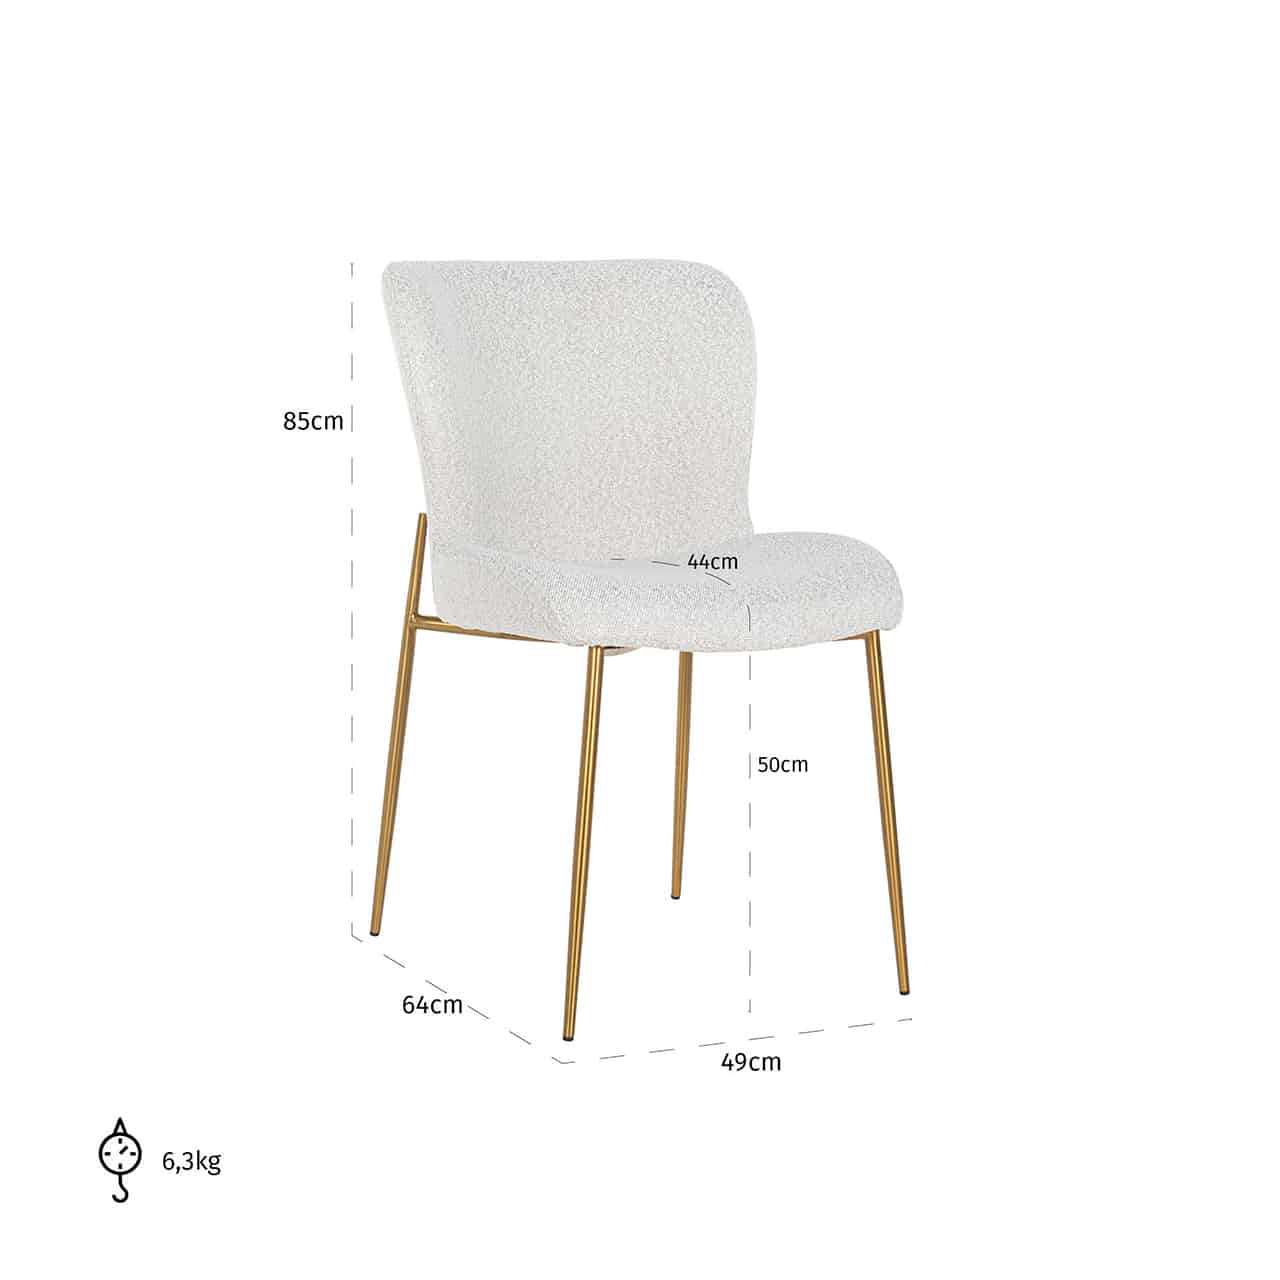 Owyn Khaki Velvet Dining Chair